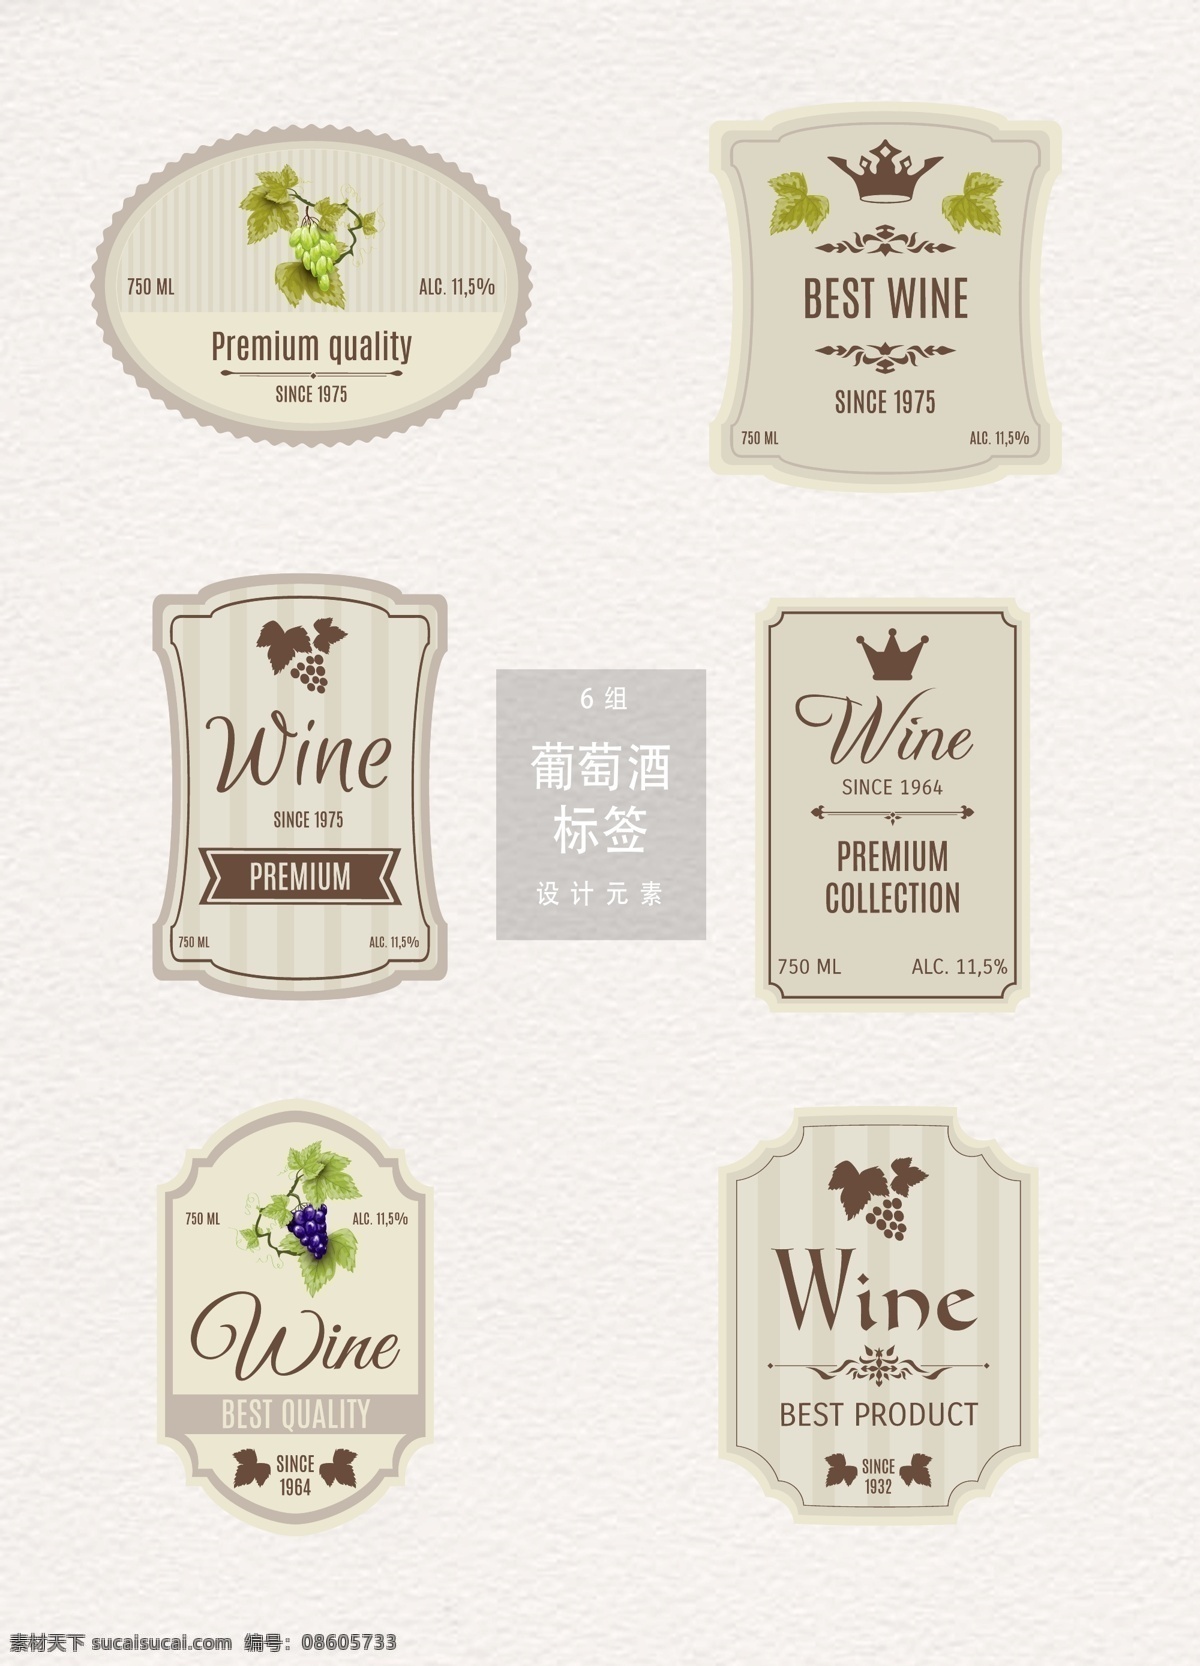 红酒 葡萄酒 标签 元素 葡萄 标签设计 葡萄酒标签 设计元素 红酒标签 葡萄园